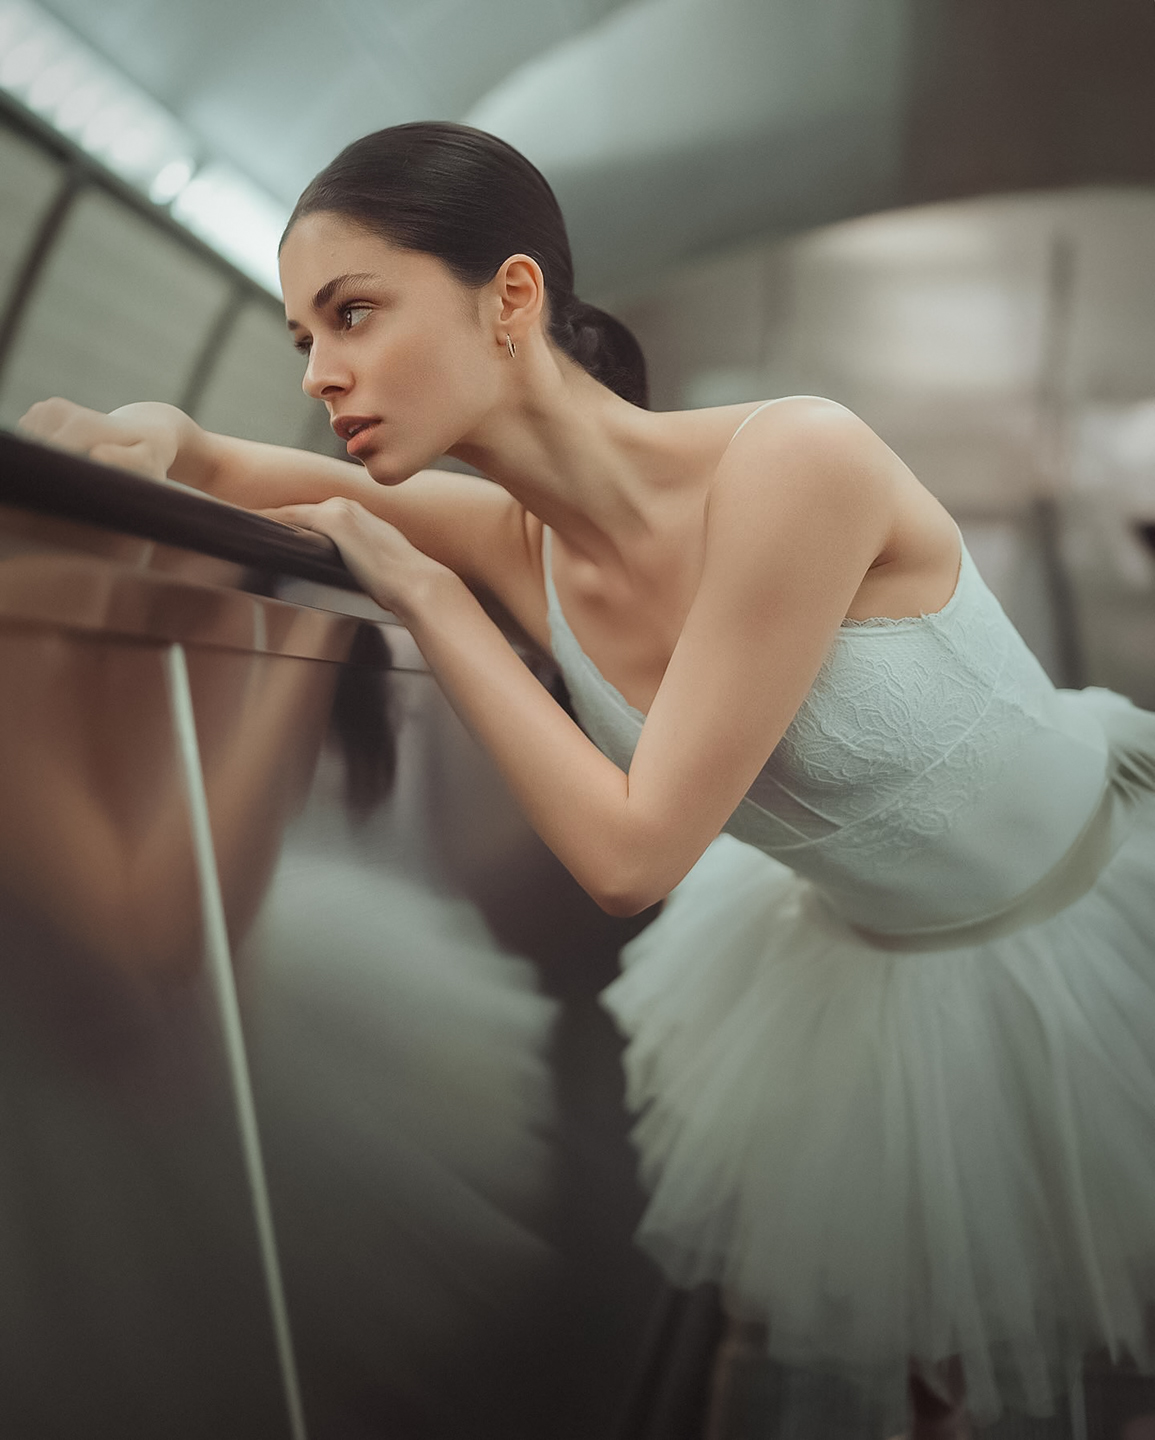 Sagaj Photography Women Ballerina Subway Reflection White Dress Andrea Adriana 1155x1440